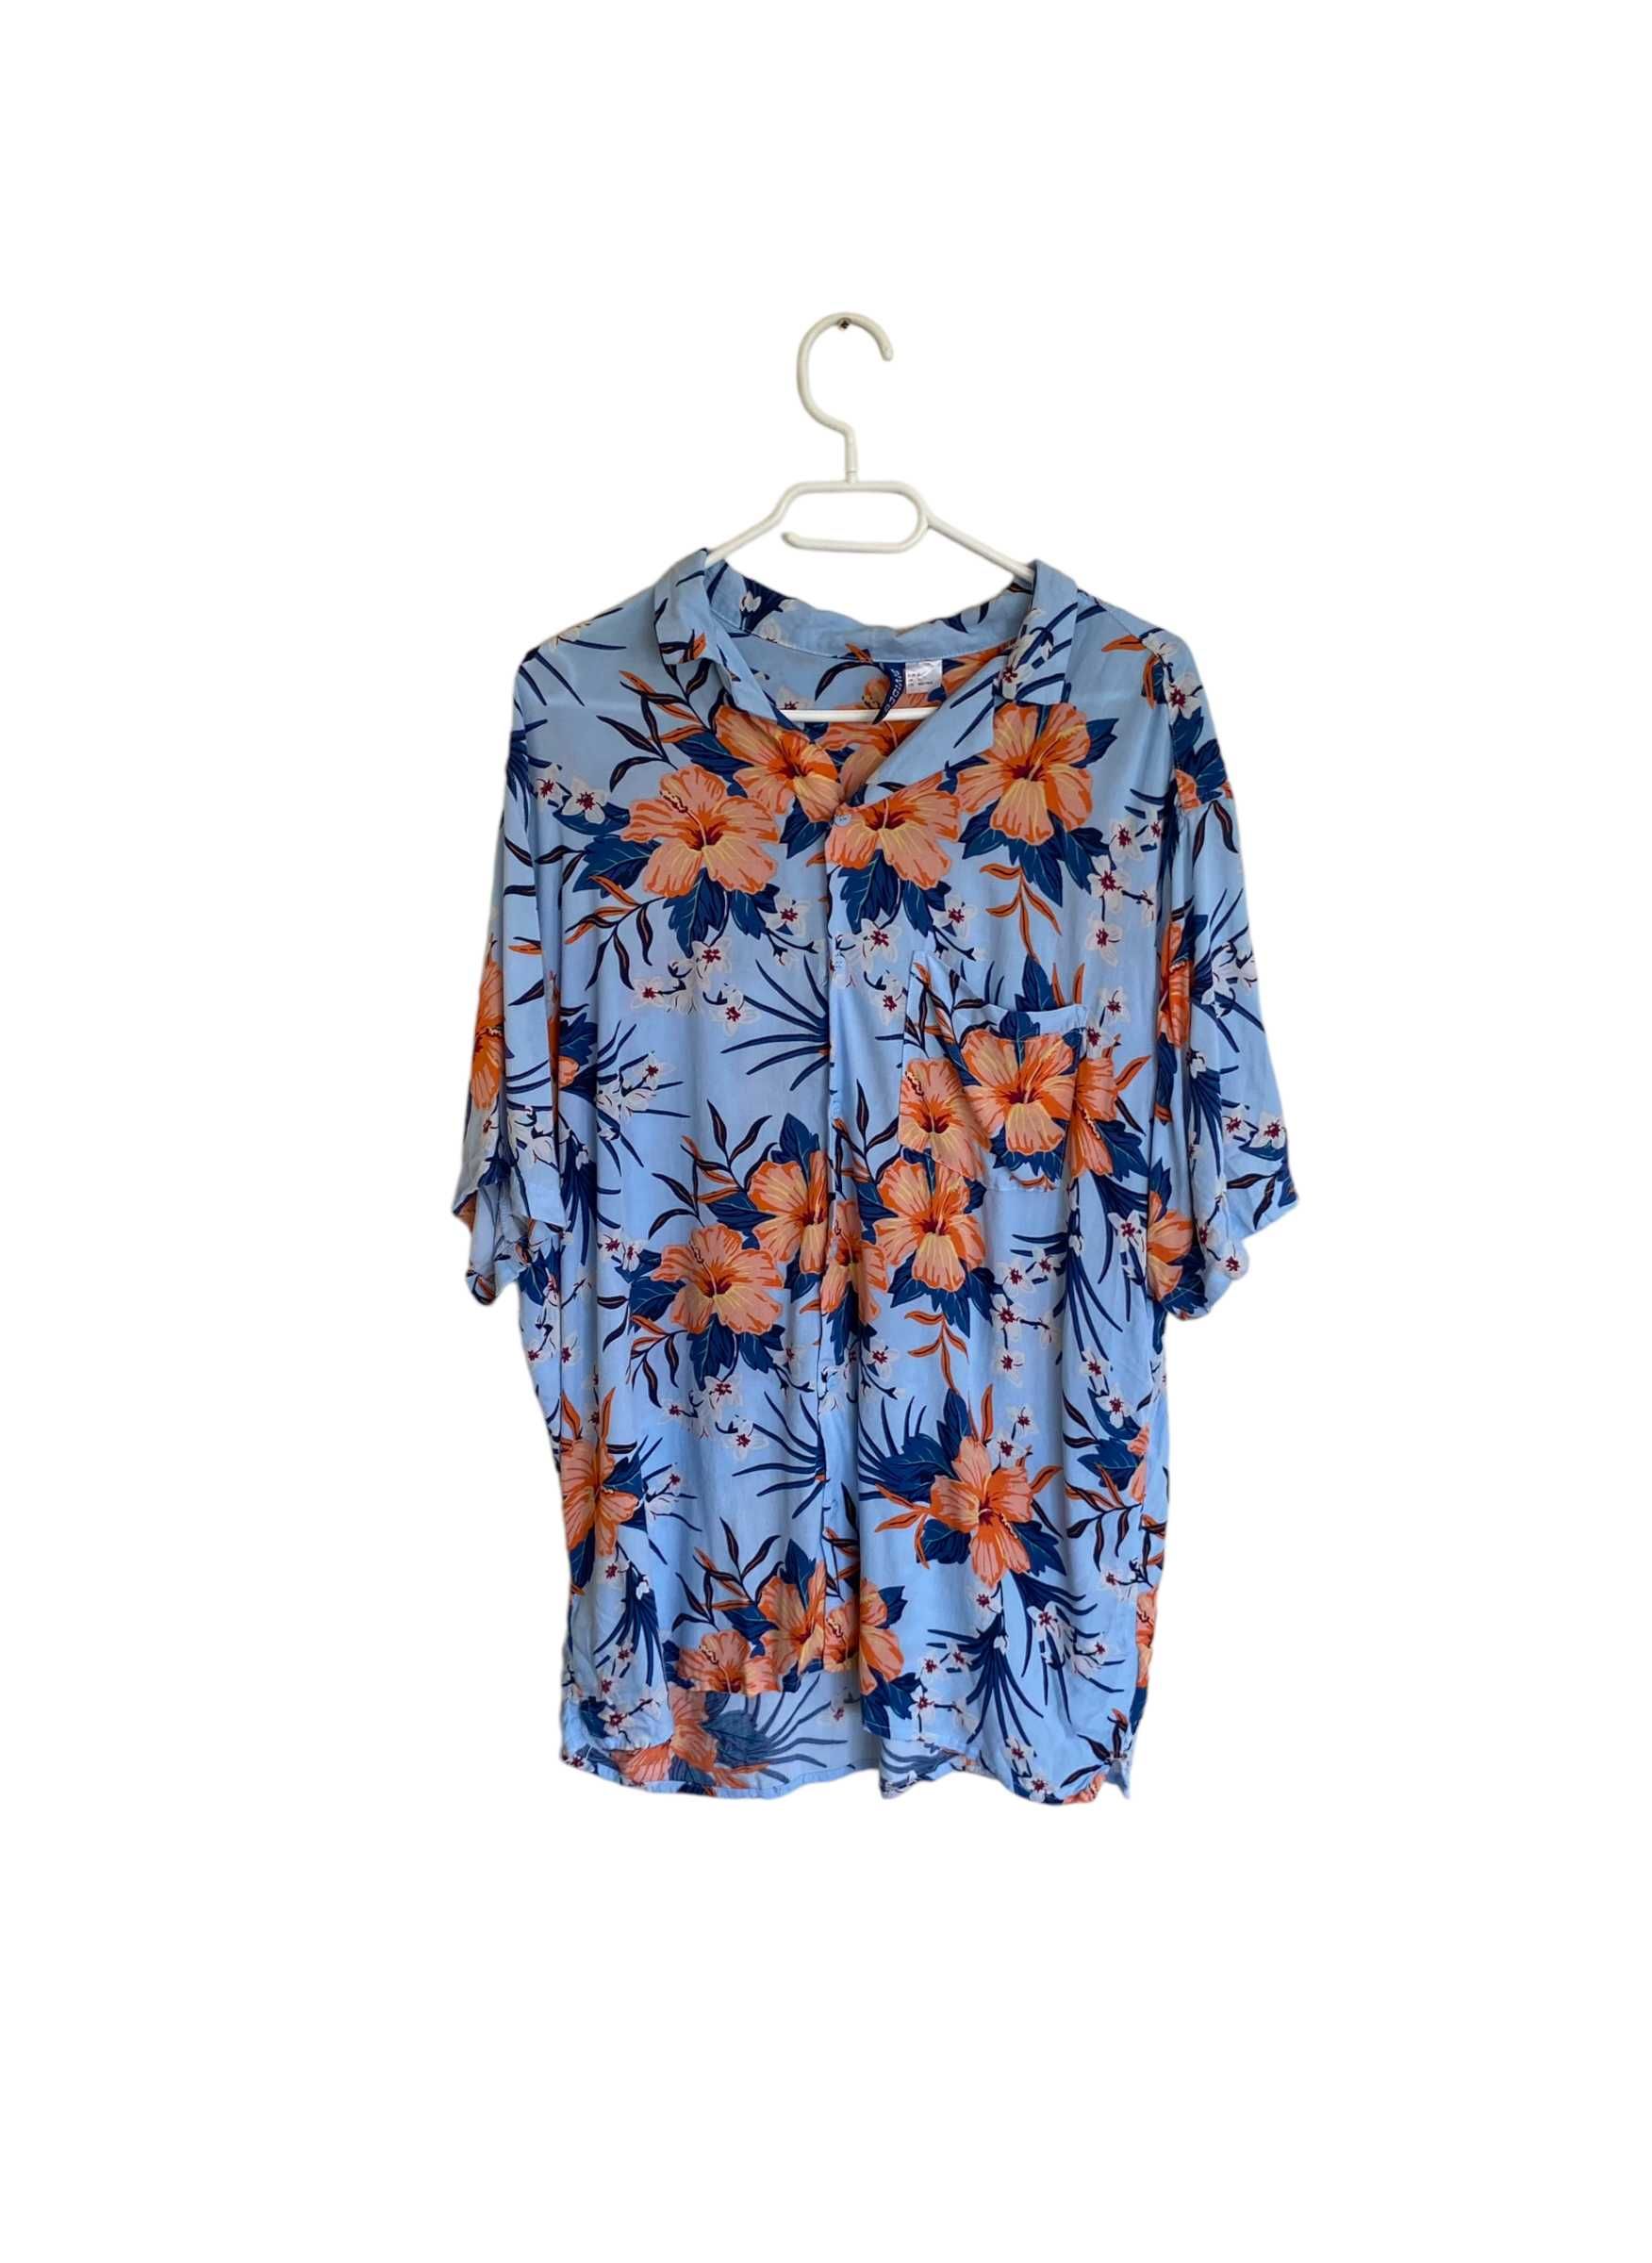 Koszula hawajska w kwiaty, rozmiar XL, stan bardzo dobry